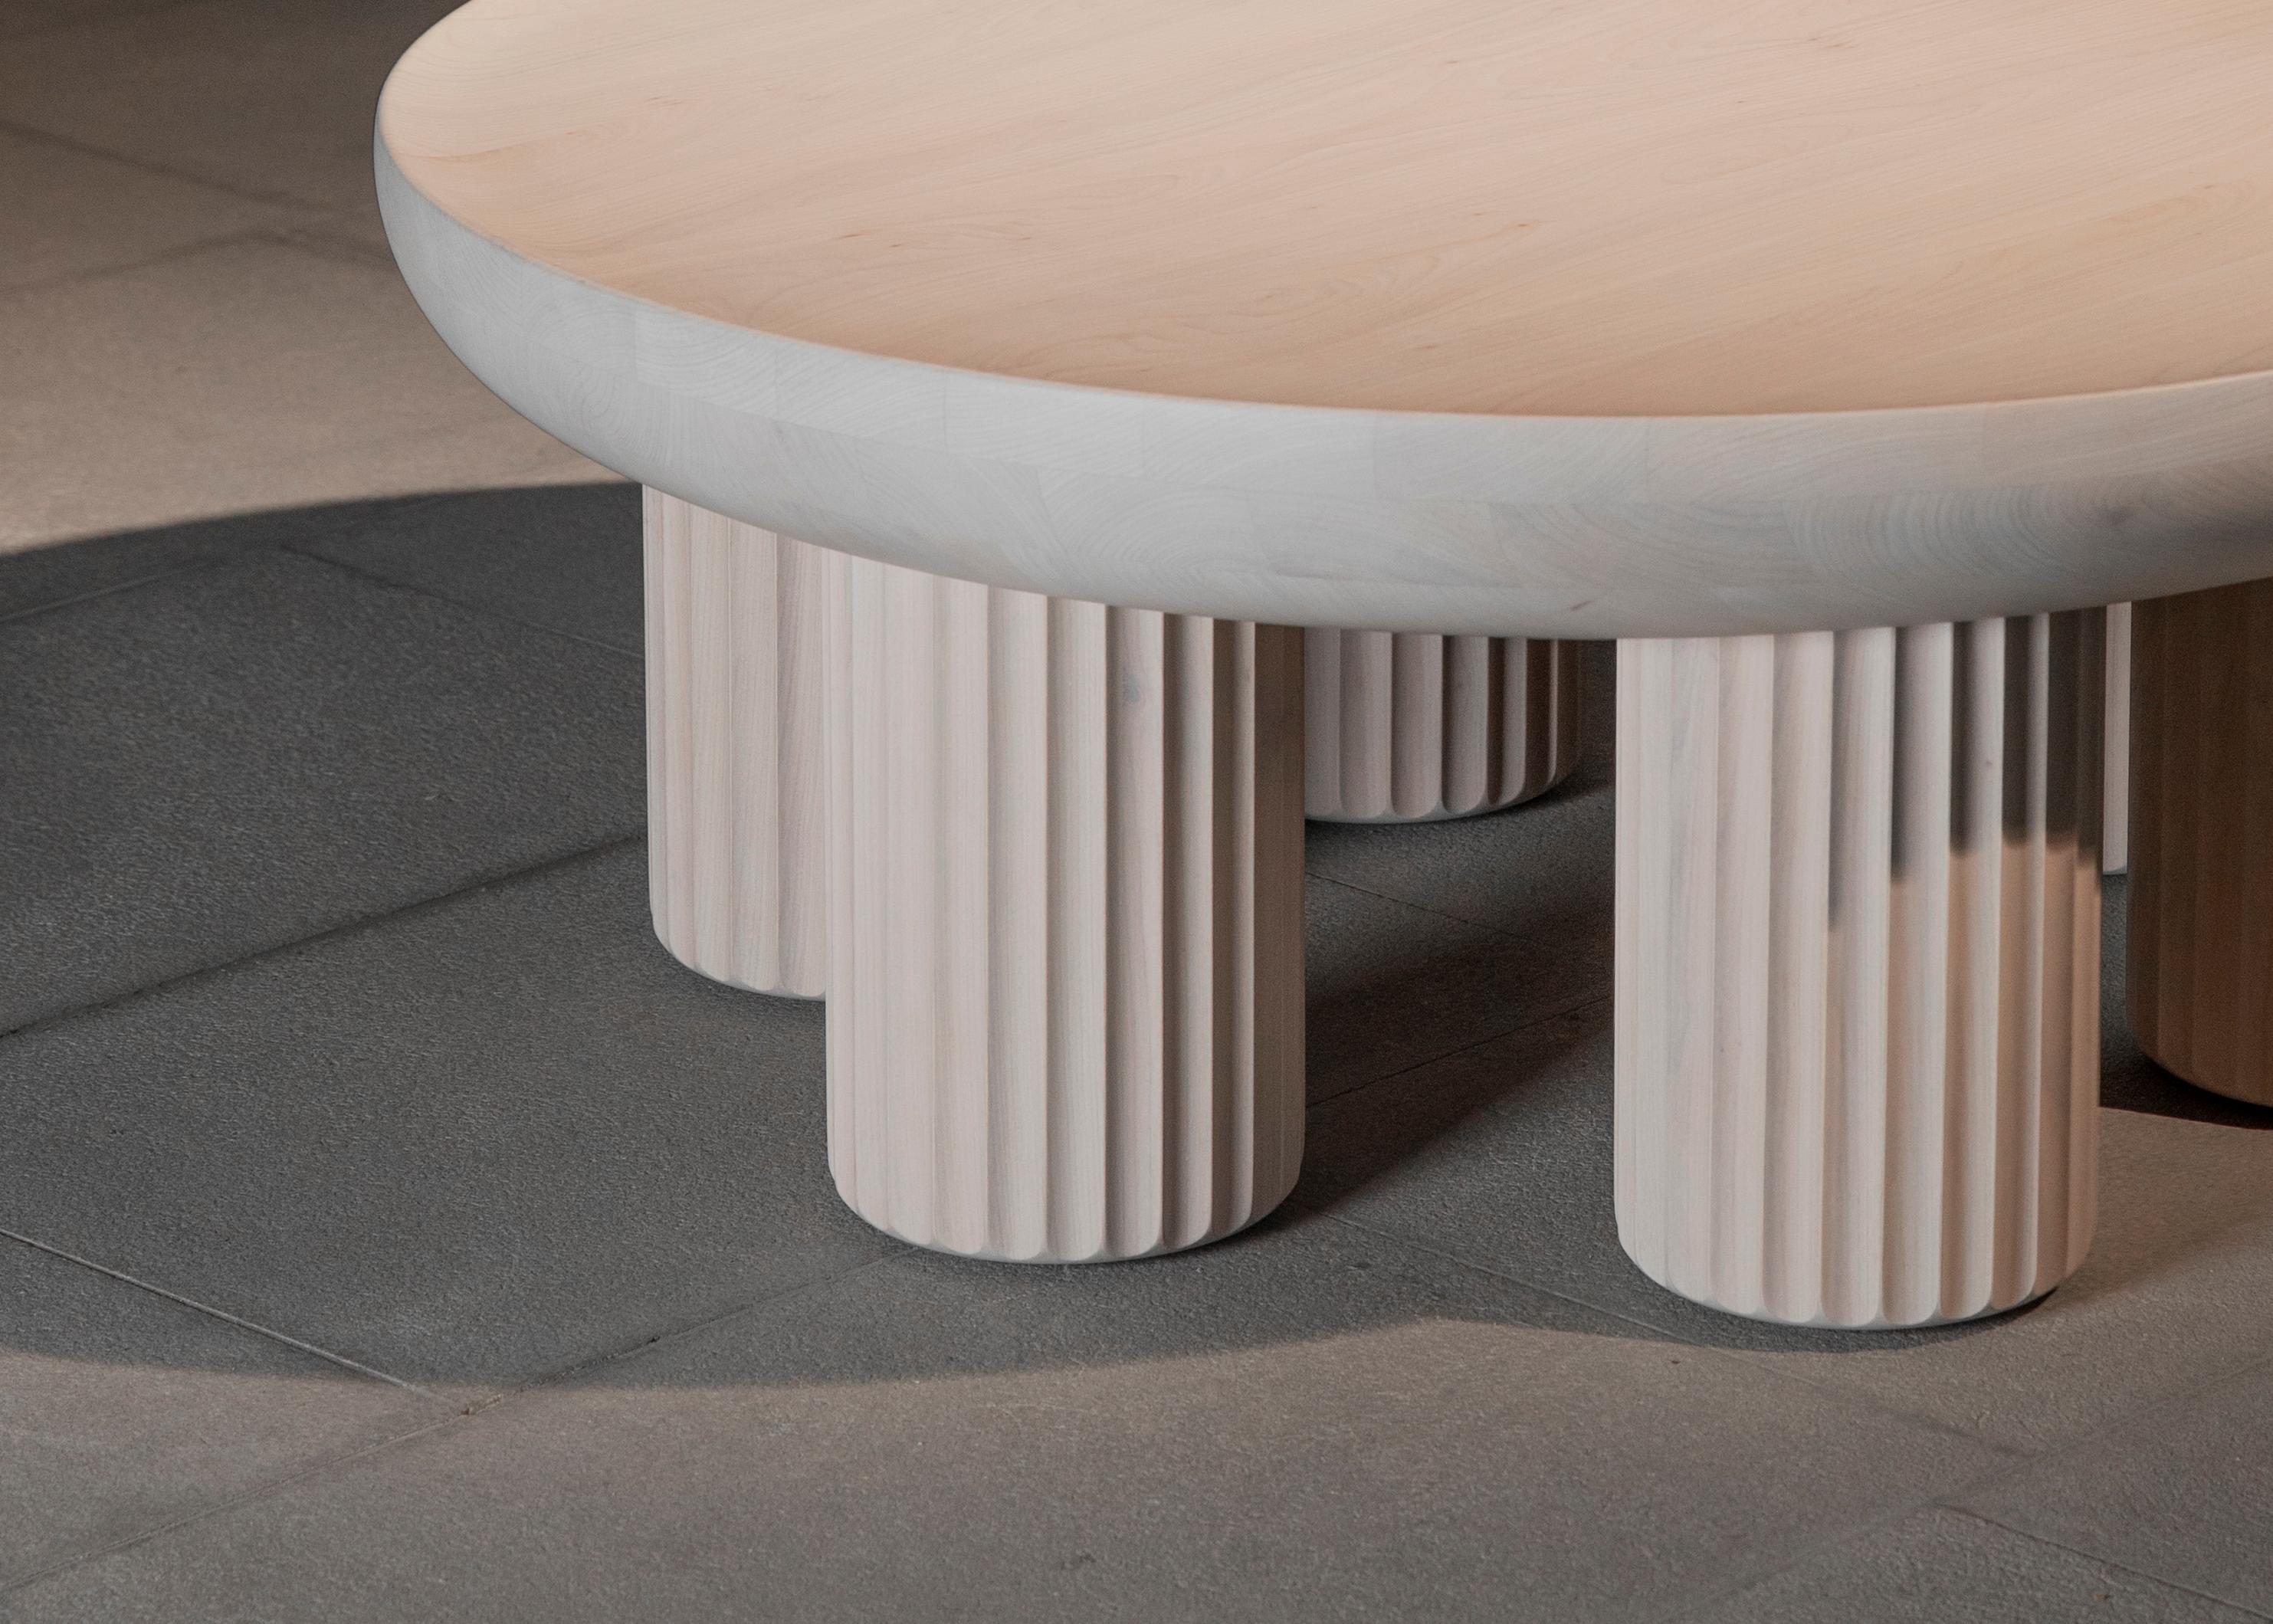 La table Kalokagathos s'inspire librement de l'esthétique de la Grèce antique. Cette table sculpturale fait partie de la collection Eclecticism, dans laquelle je poursuis la relation entre l'histoire et le présent. Chaque pièce de la collection